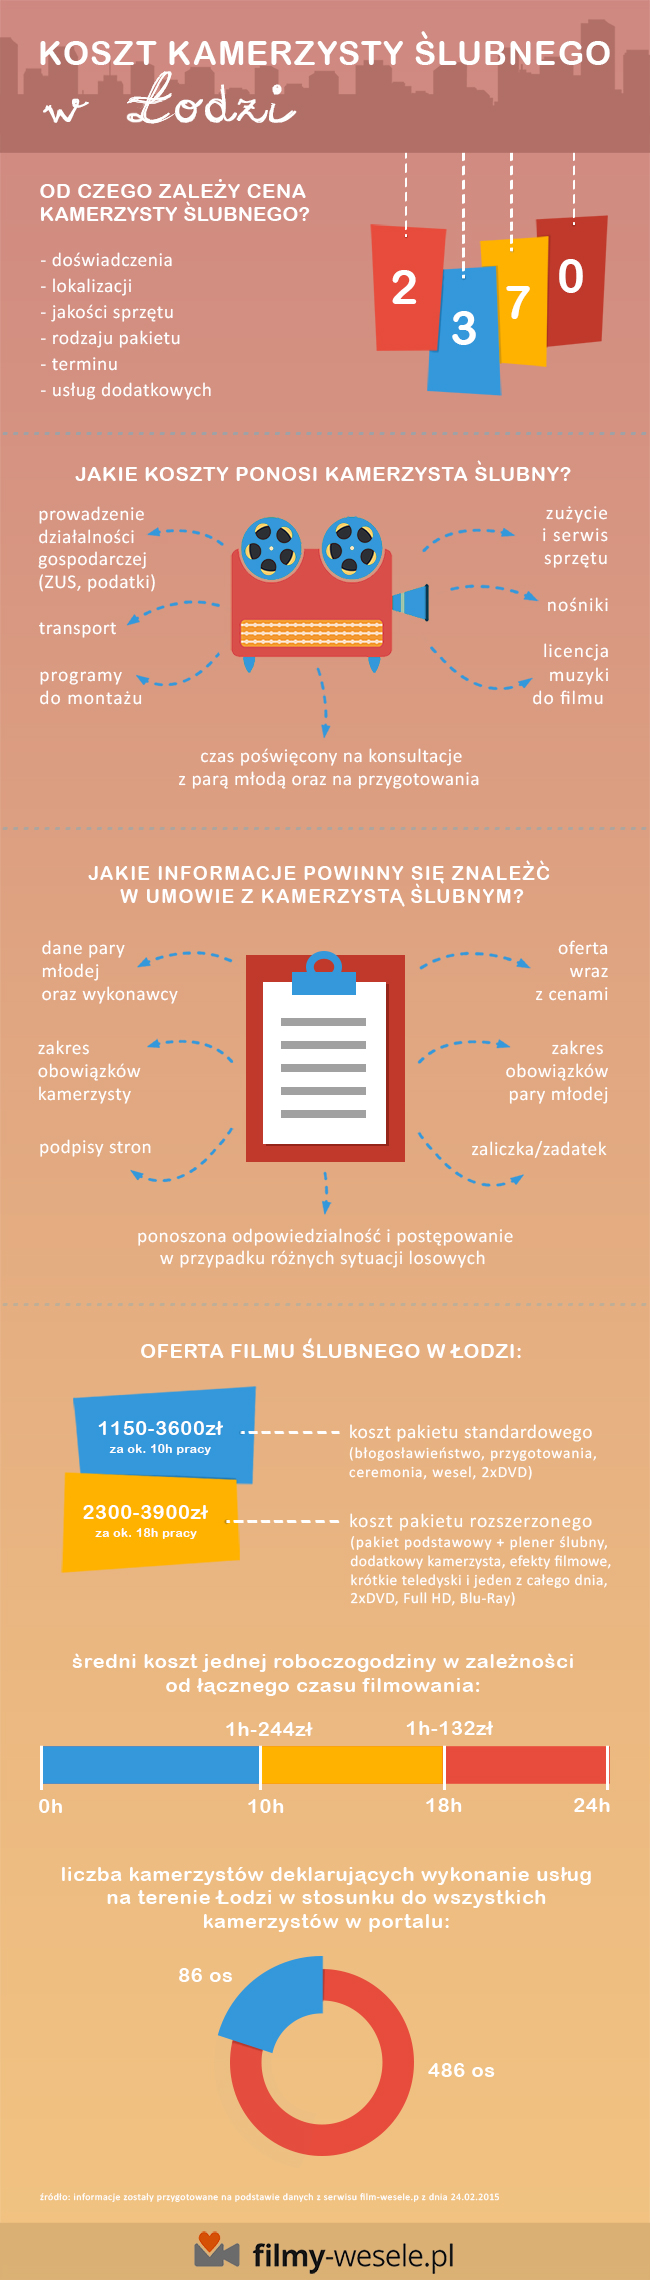 infografika - koszty kamerzysty ślubnego w Łodzi